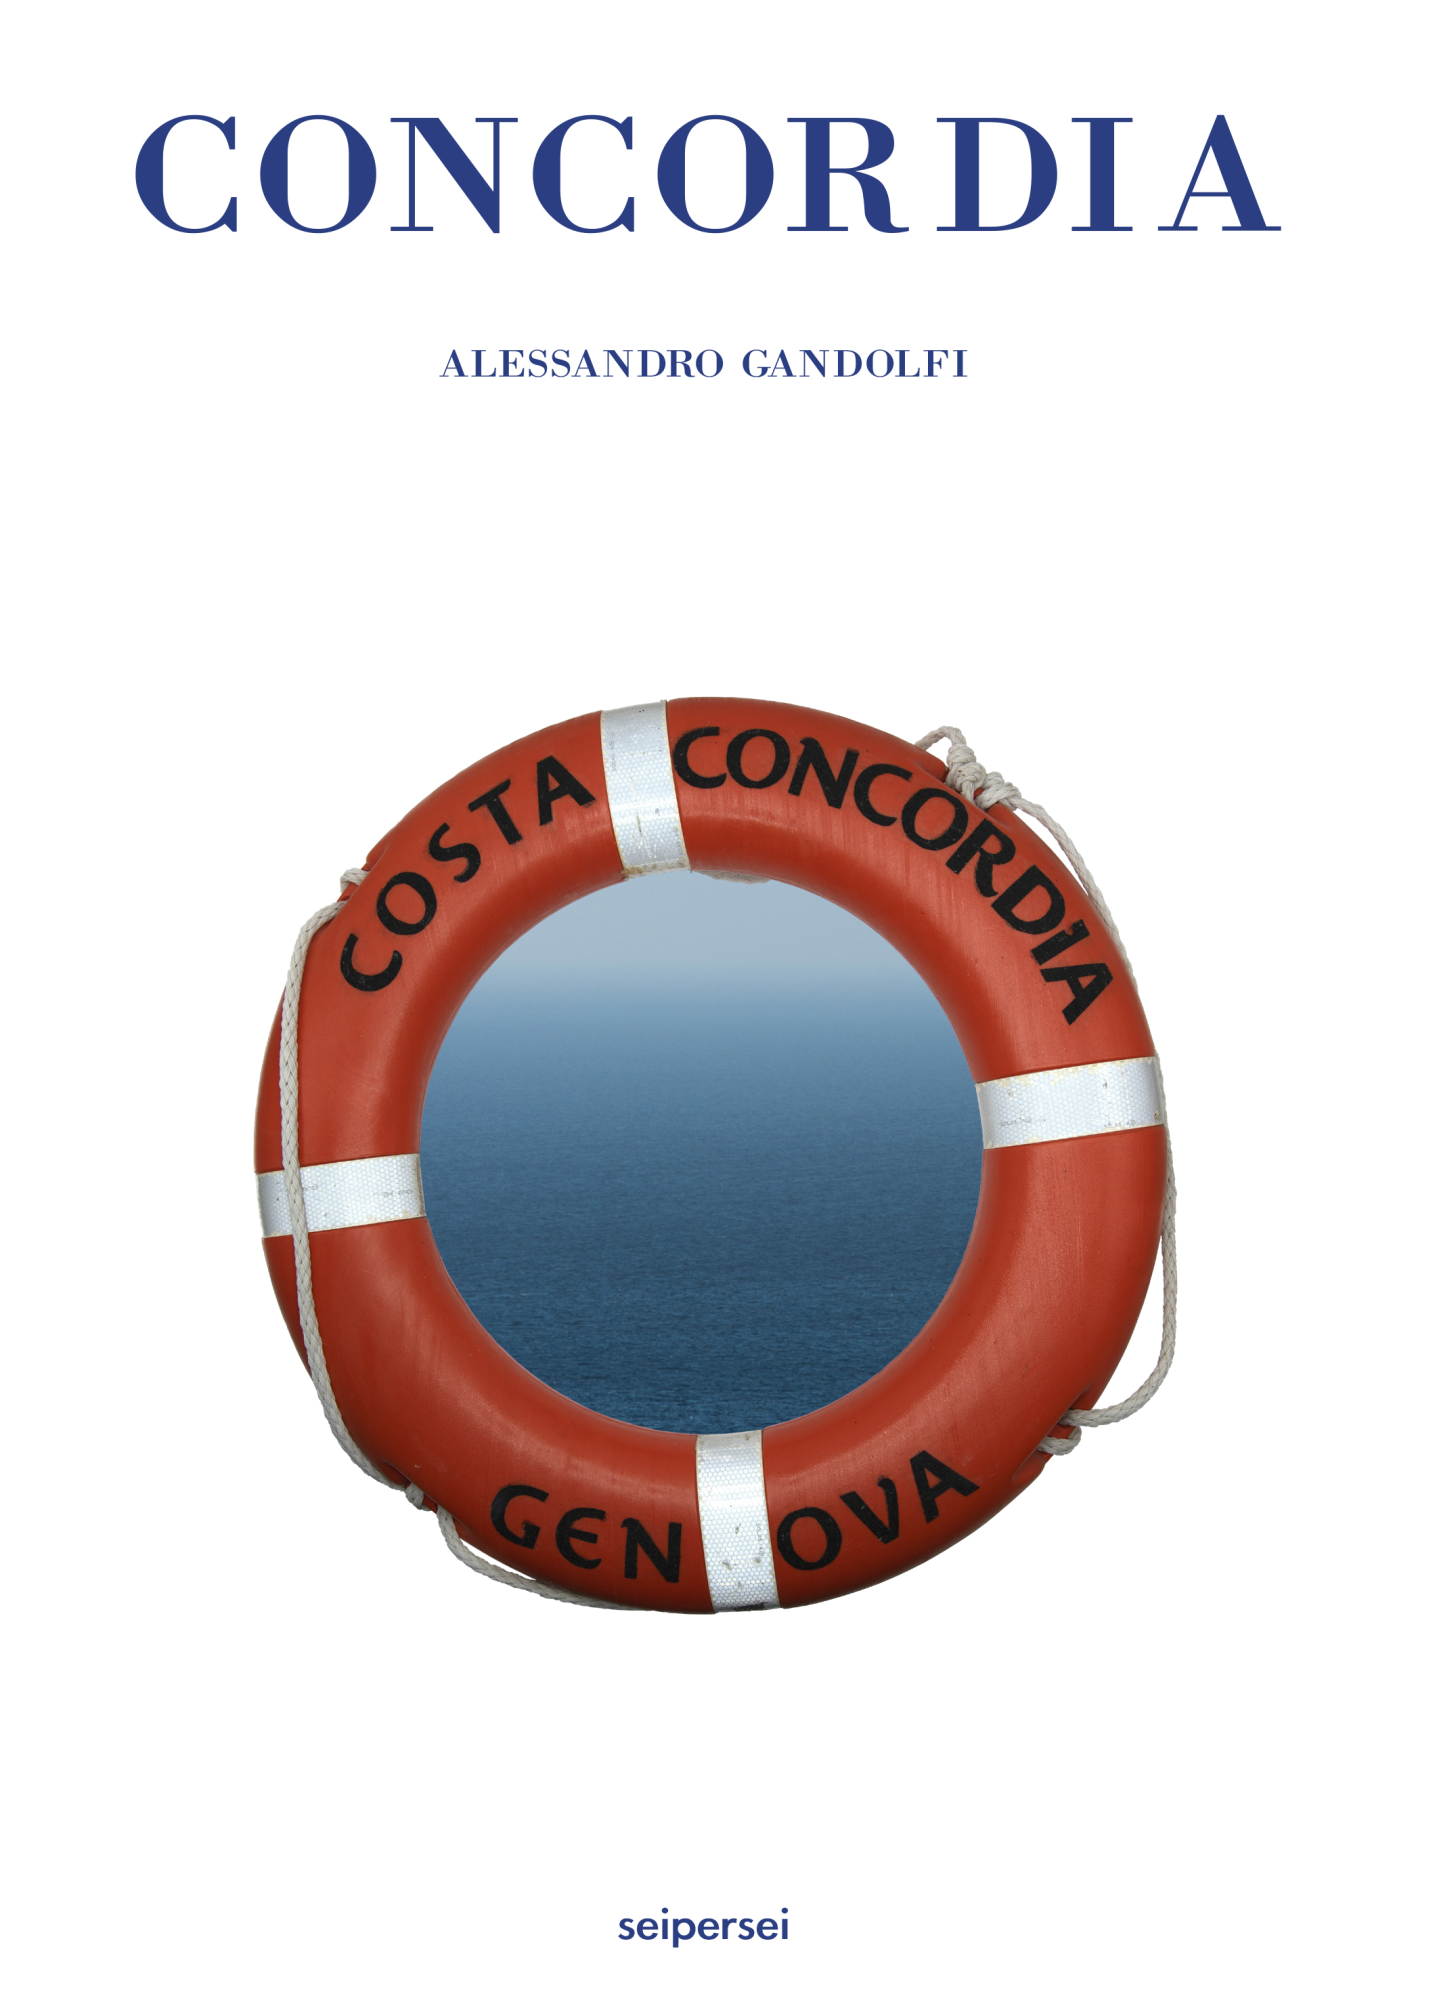 Libri Alessandro Gandolfi - Concordia NUOVO SIGILLATO, EDIZIONE DEL 05/12/2022 SUBITO DISPONIBILE